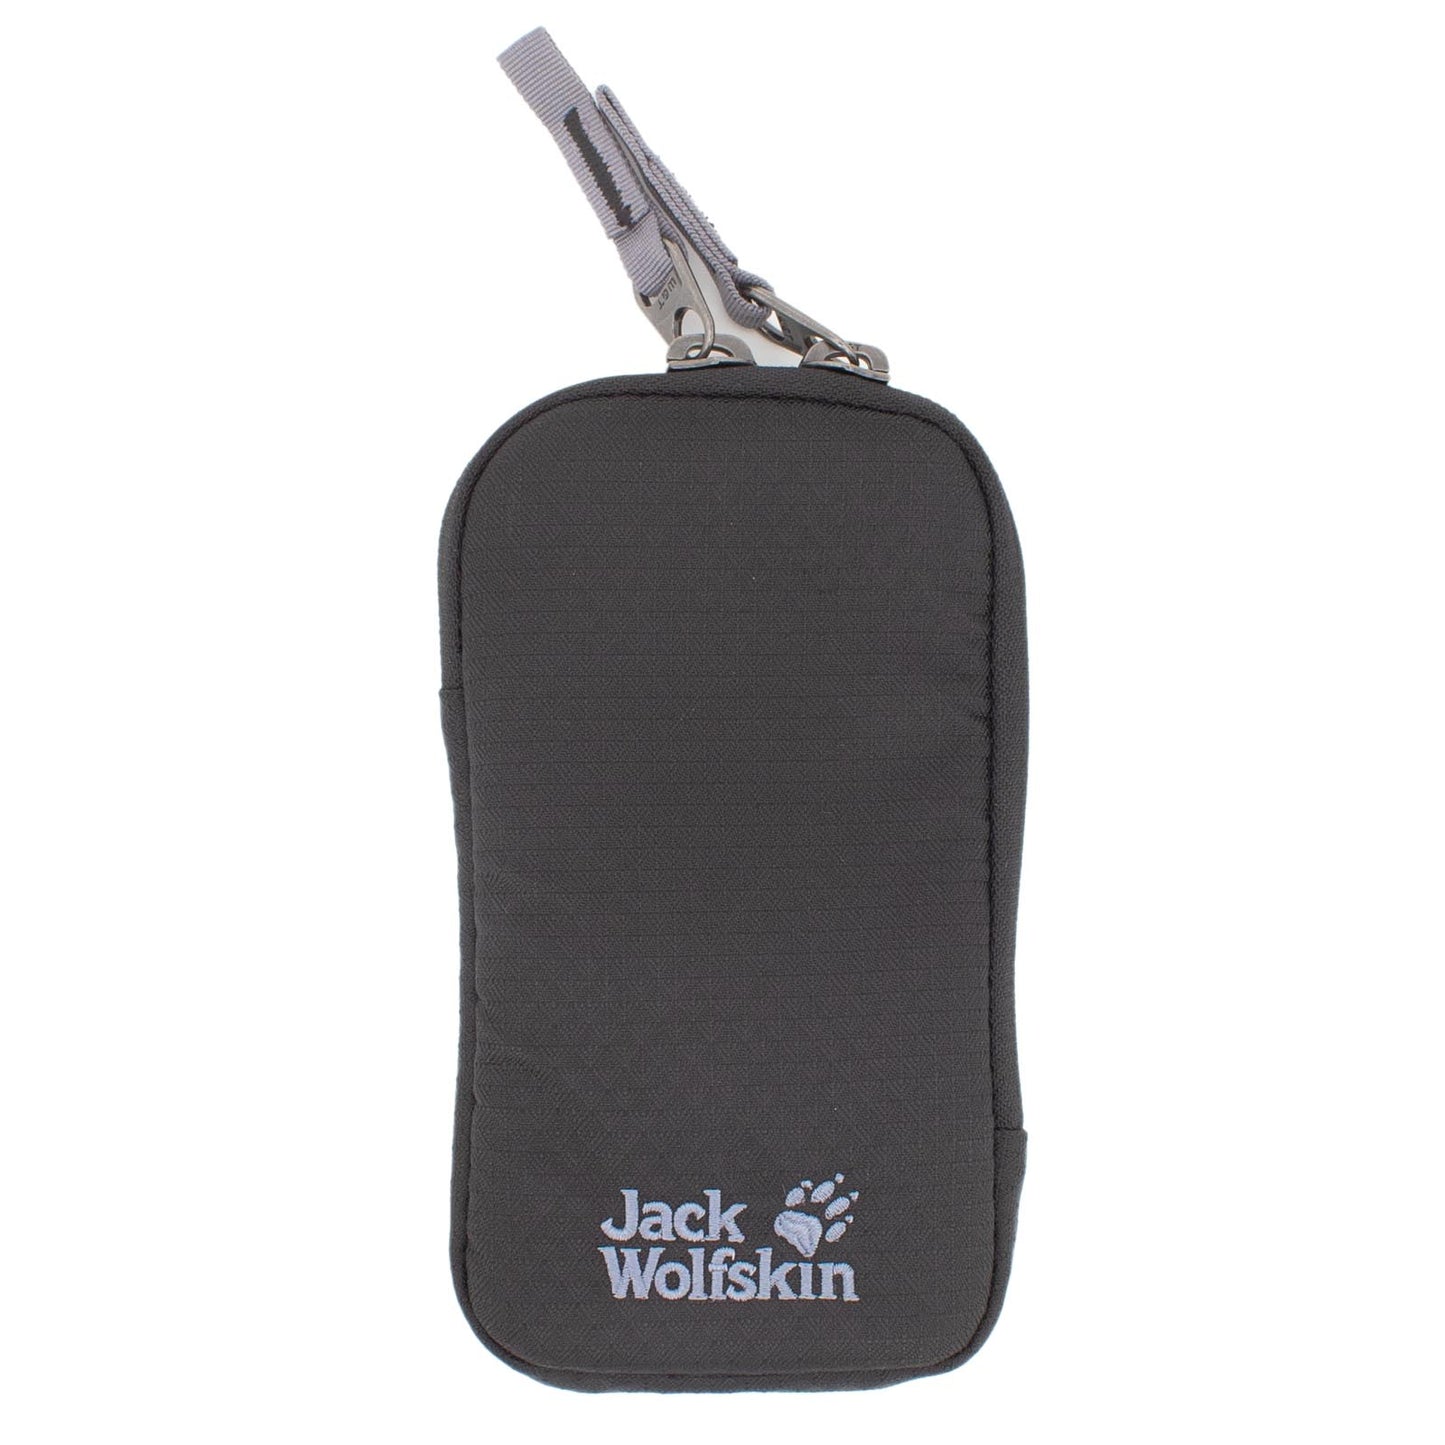 Jack Wolfskin Ecoloader Smart Pouch Handy Tasche kleine Umhängetasche 8007101